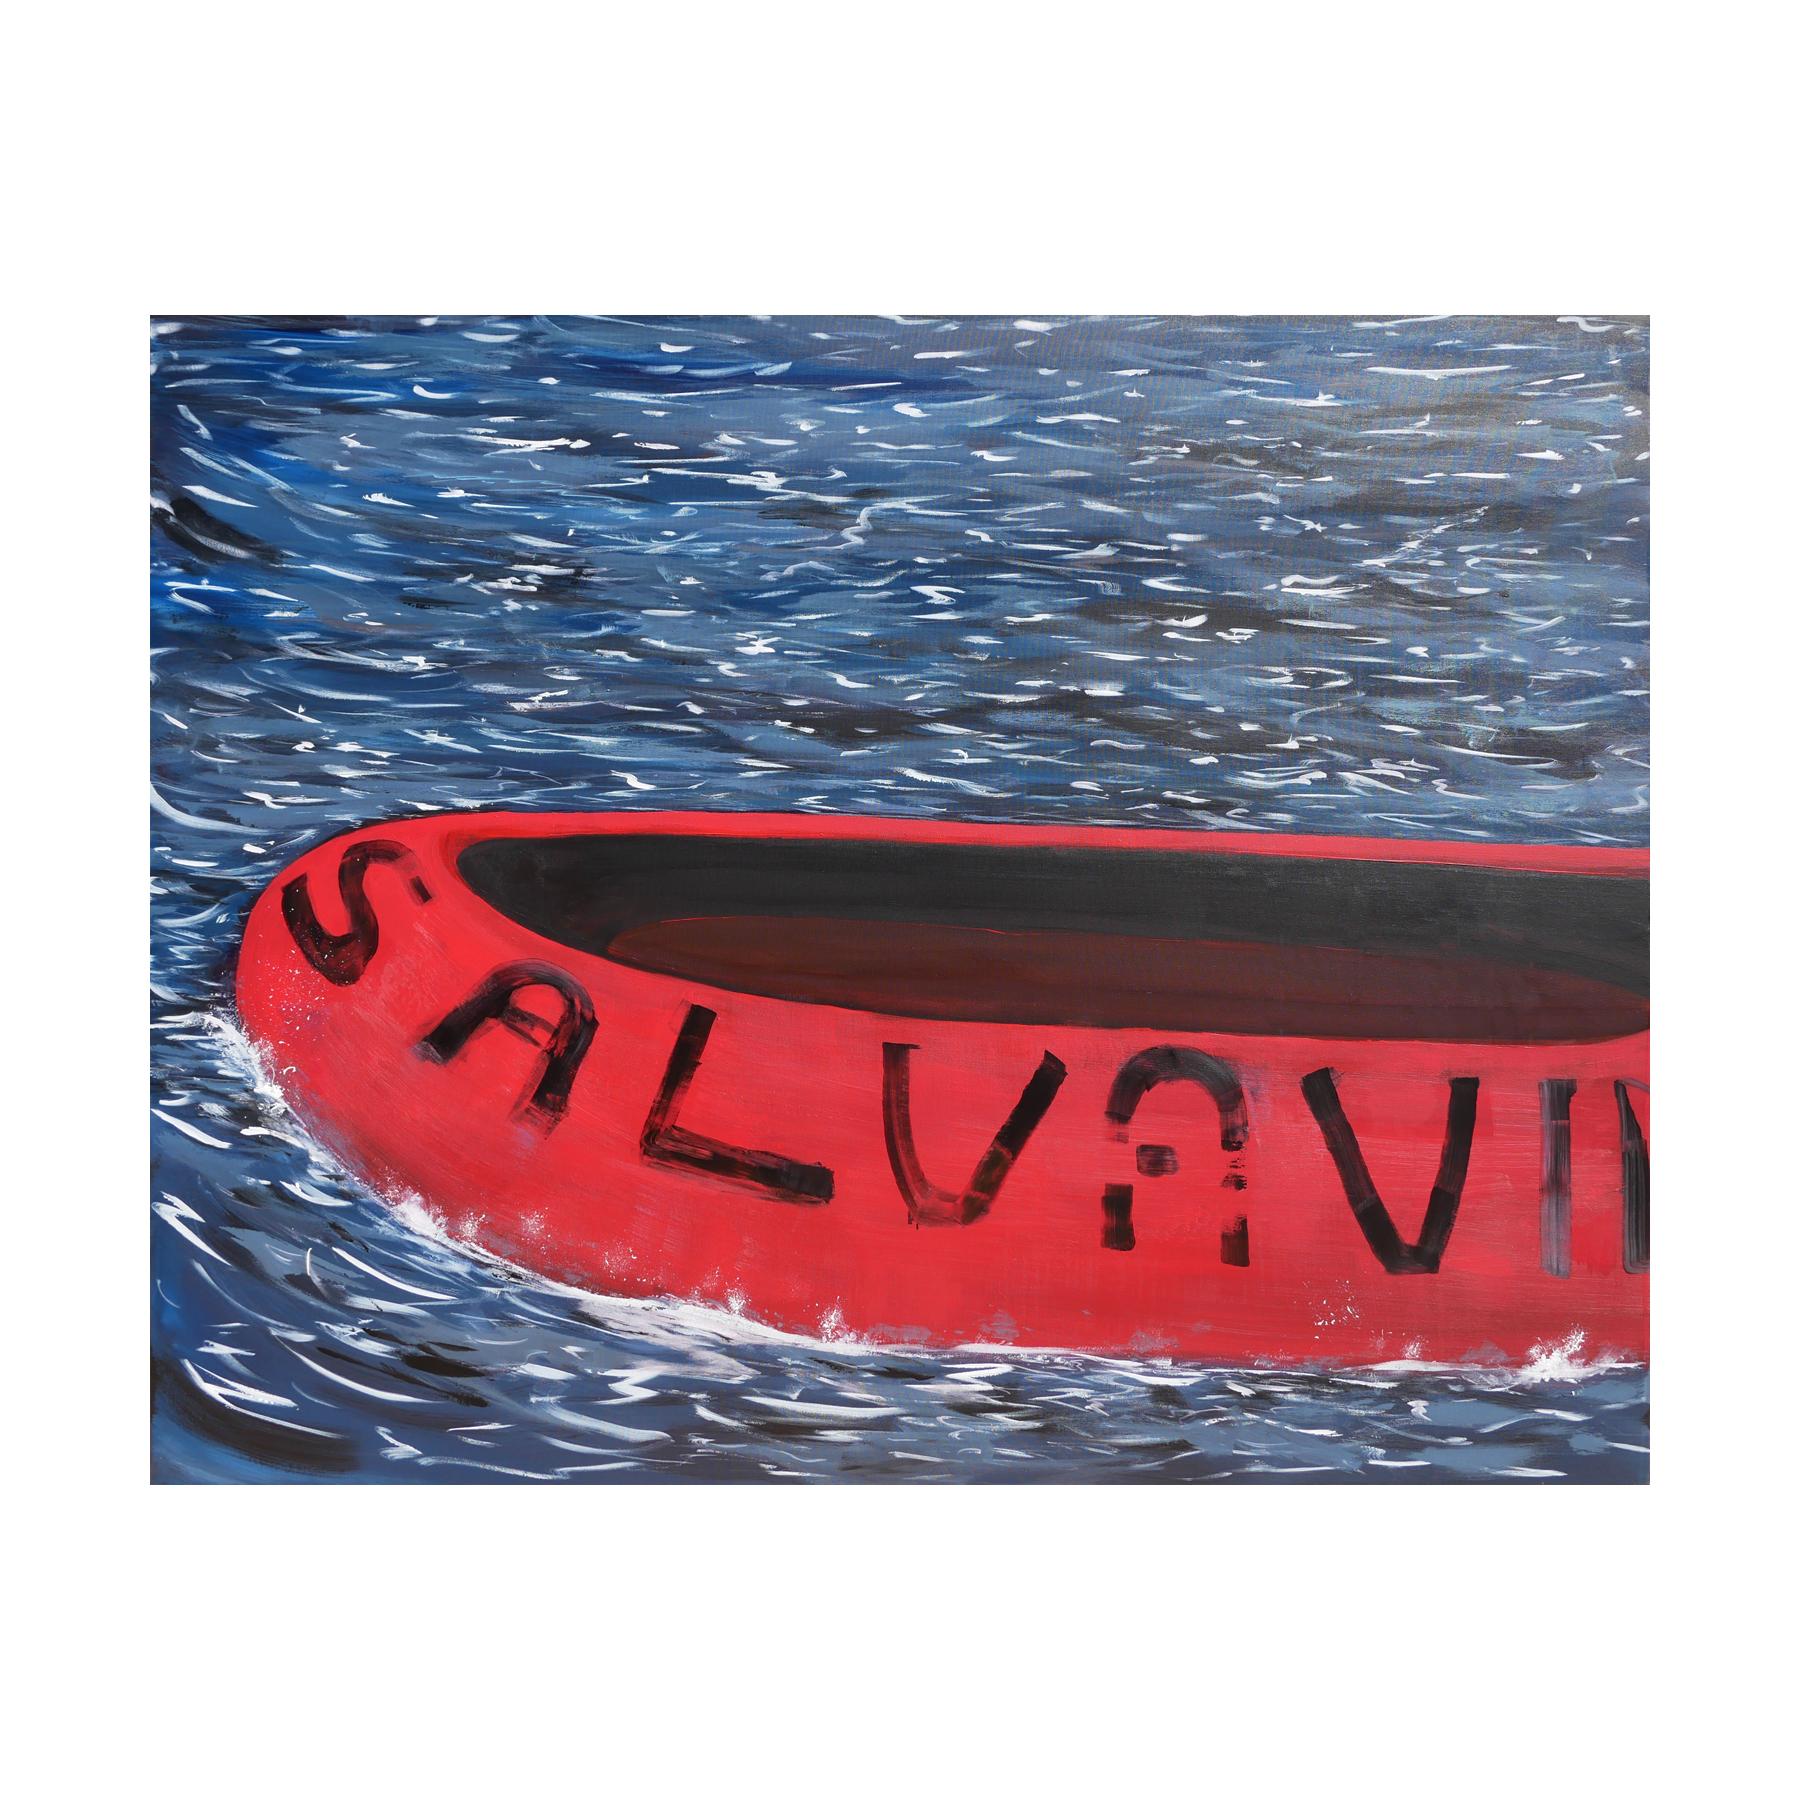 Salvavida - Peinture de paysage marin contemporain bleu, rouge et blanc avec textes - Painting de Moisés Villafuerte